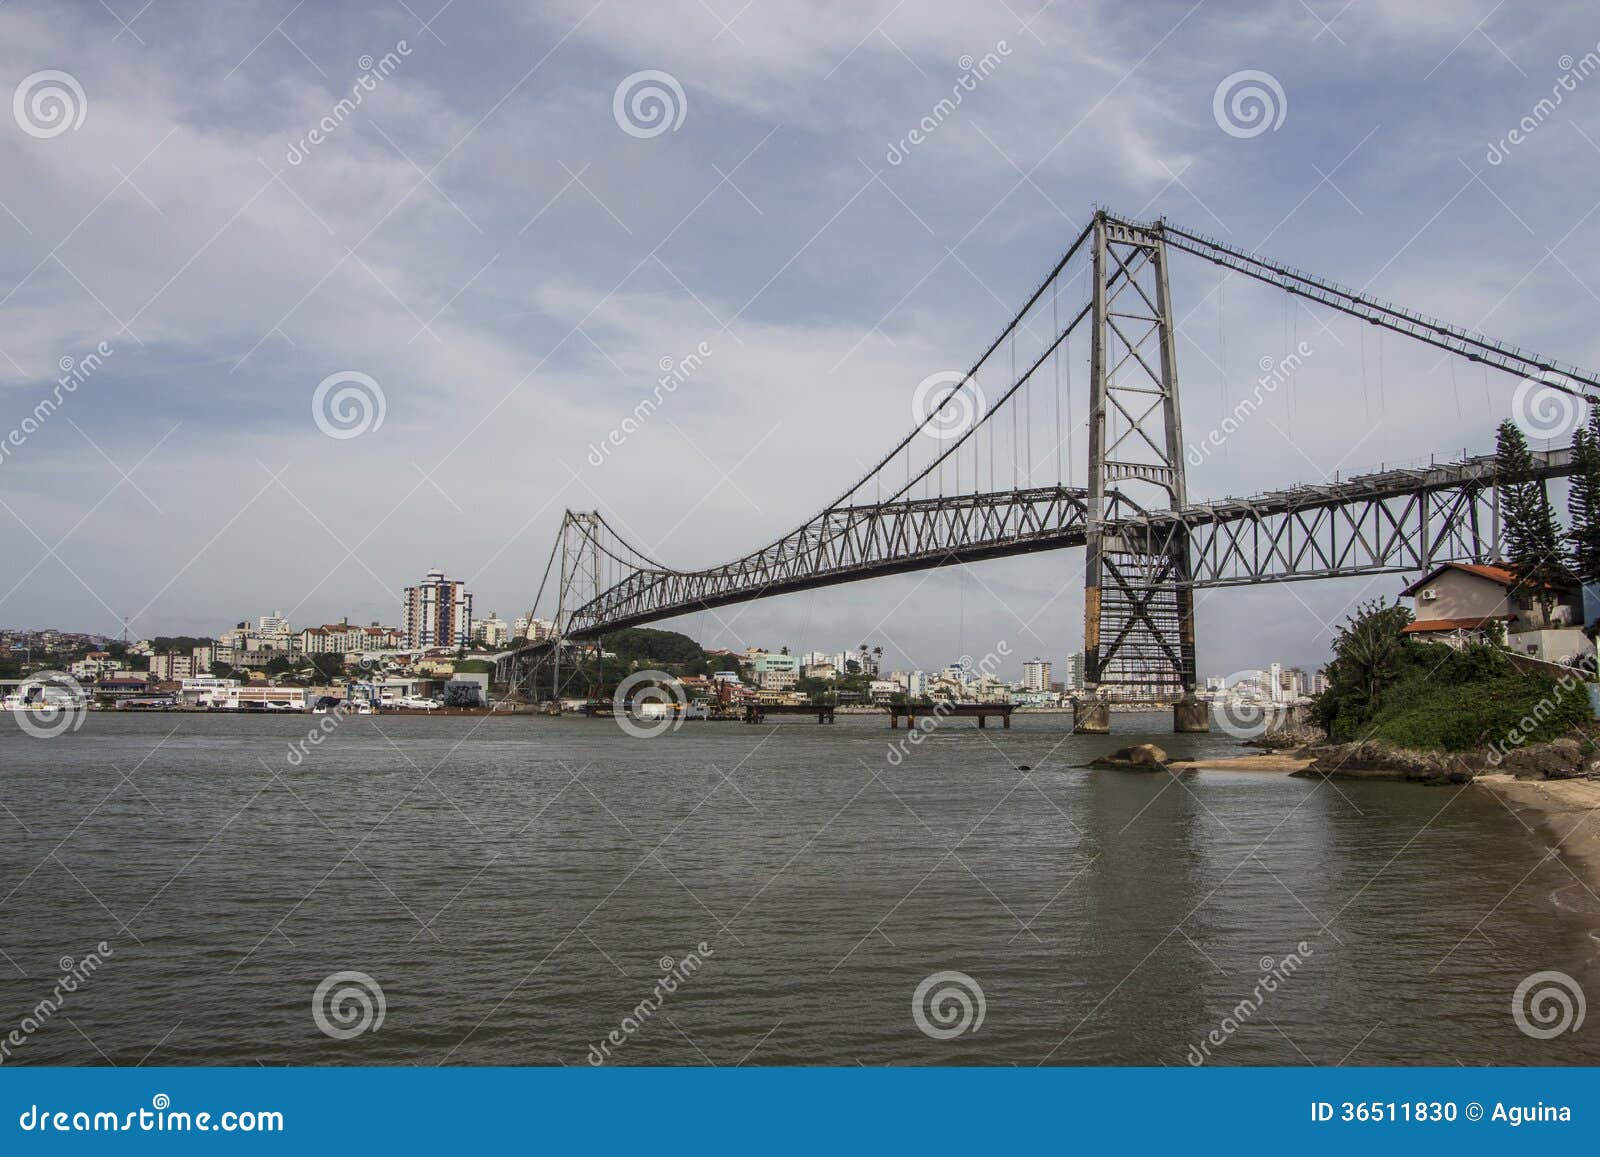 hercÃÂ­lio luz bridge - florianopolis - sc - brazil